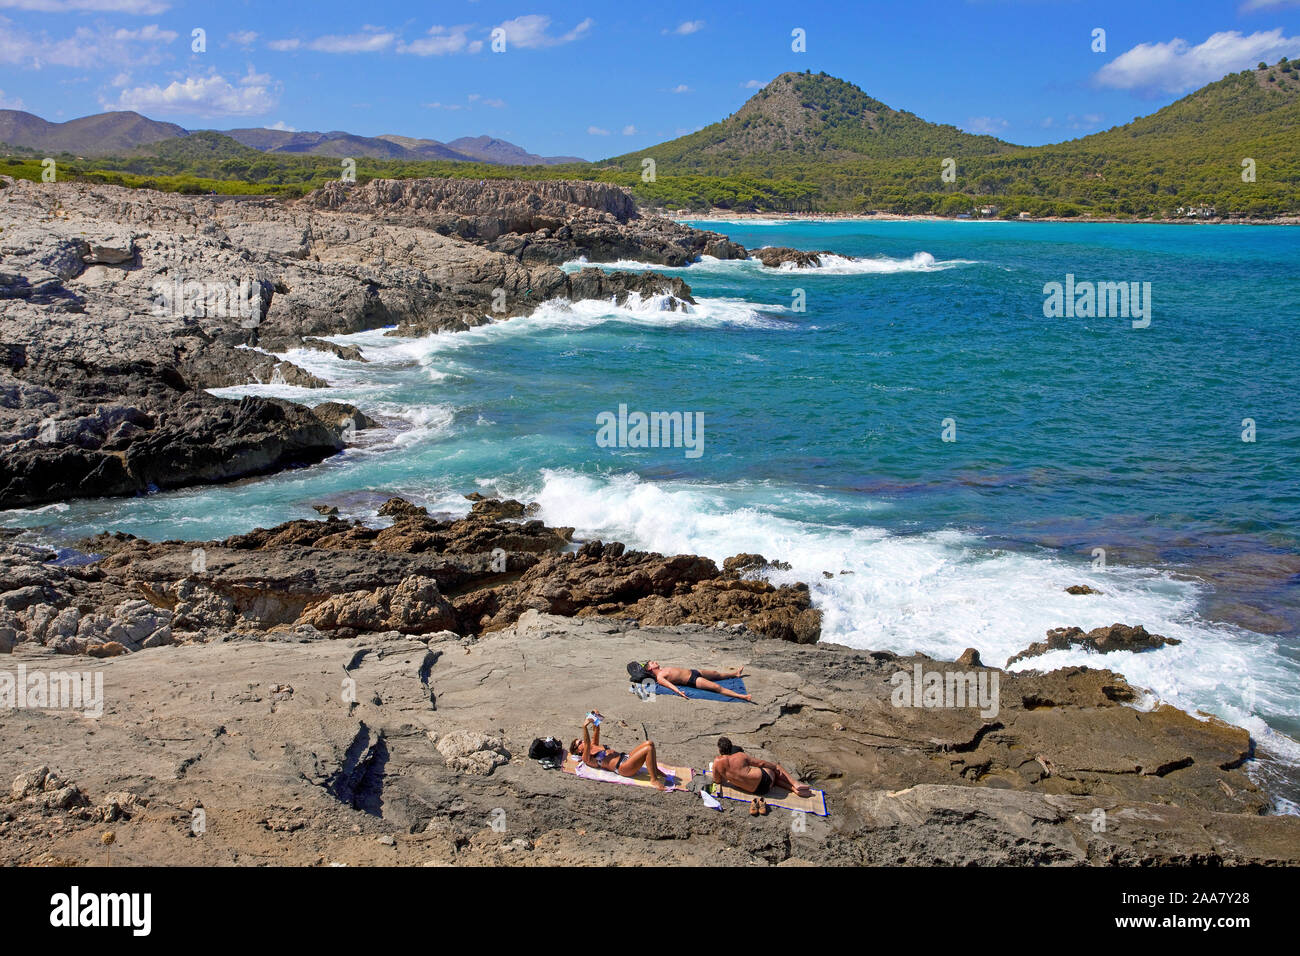 Persone presso la costa rocciosa a Cala Agulla, Cala Ratjada, Maiorca, isole Baleari, Spagna Foto Stock